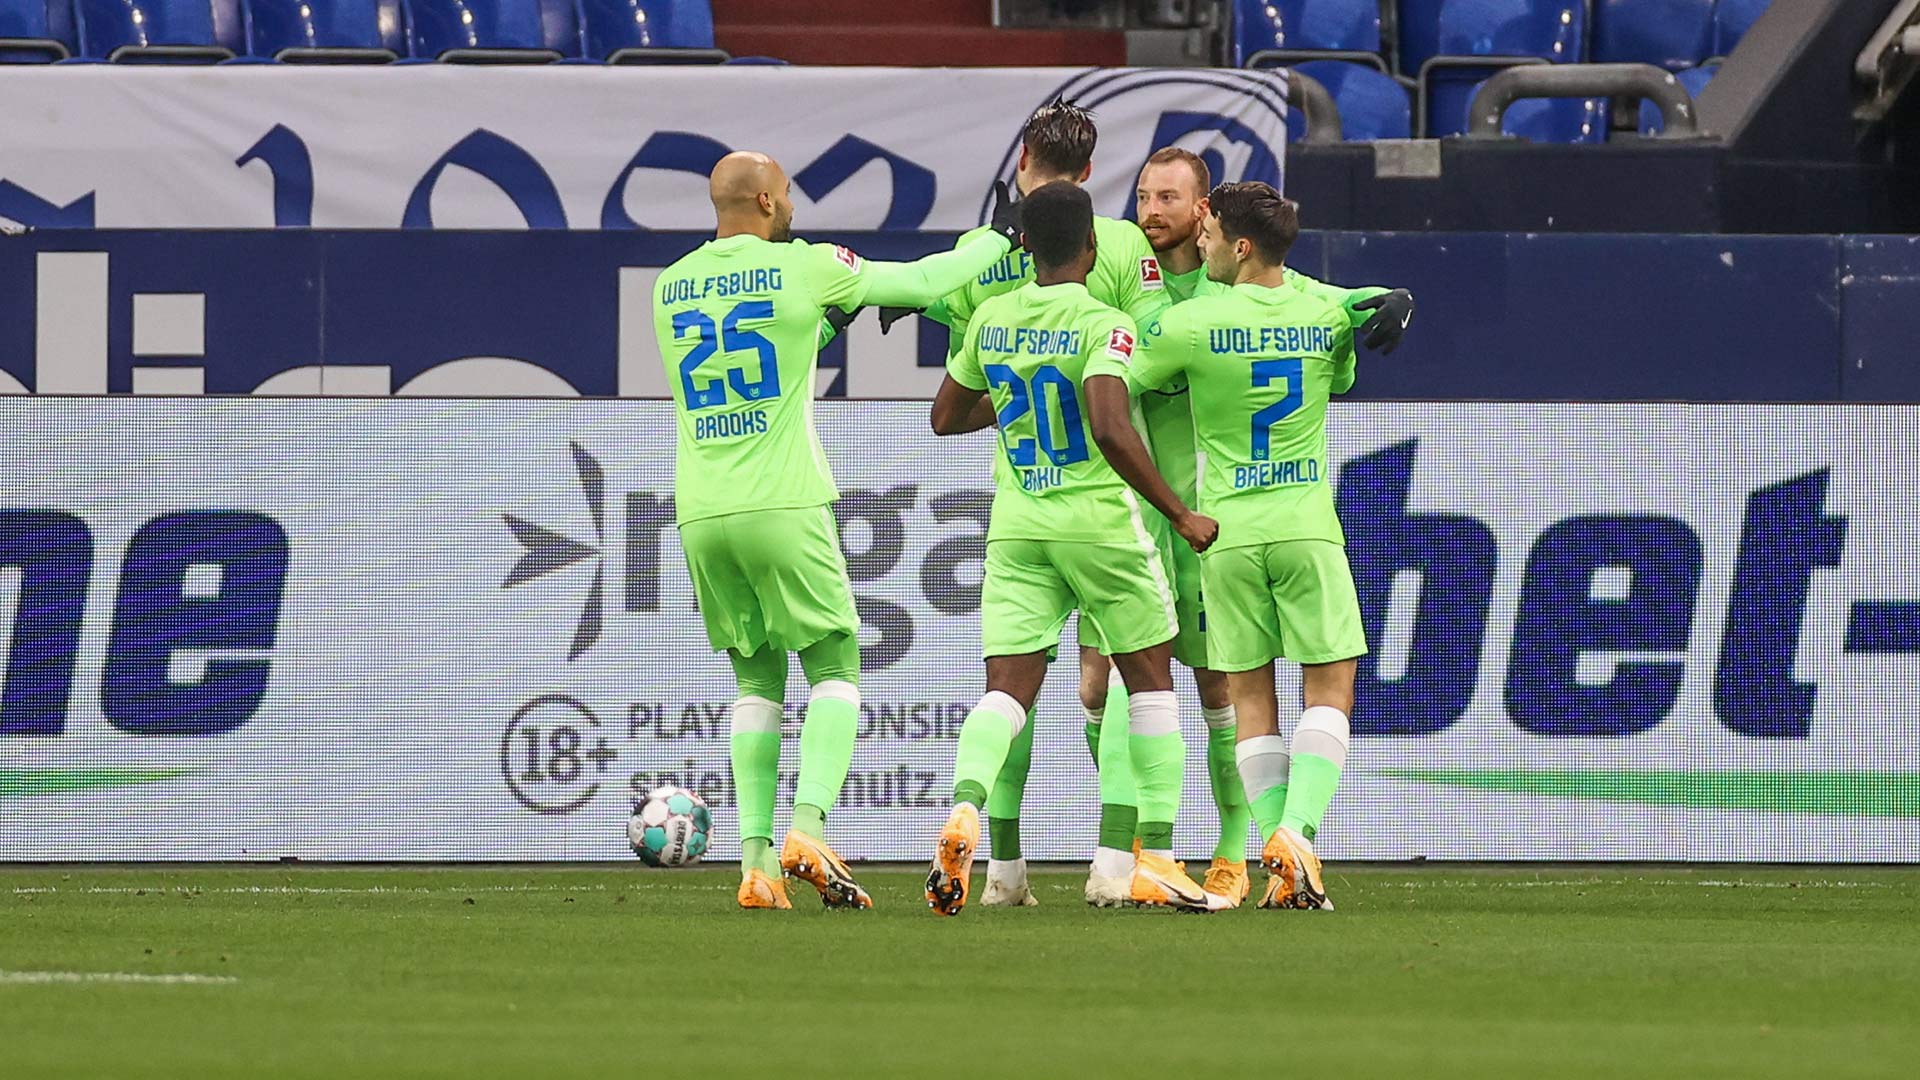 Die Wölfe Weghorst, Schlager, Arnold, Brekalo und Baku umarmen sich nach einem Tor gegen Schalke 04.